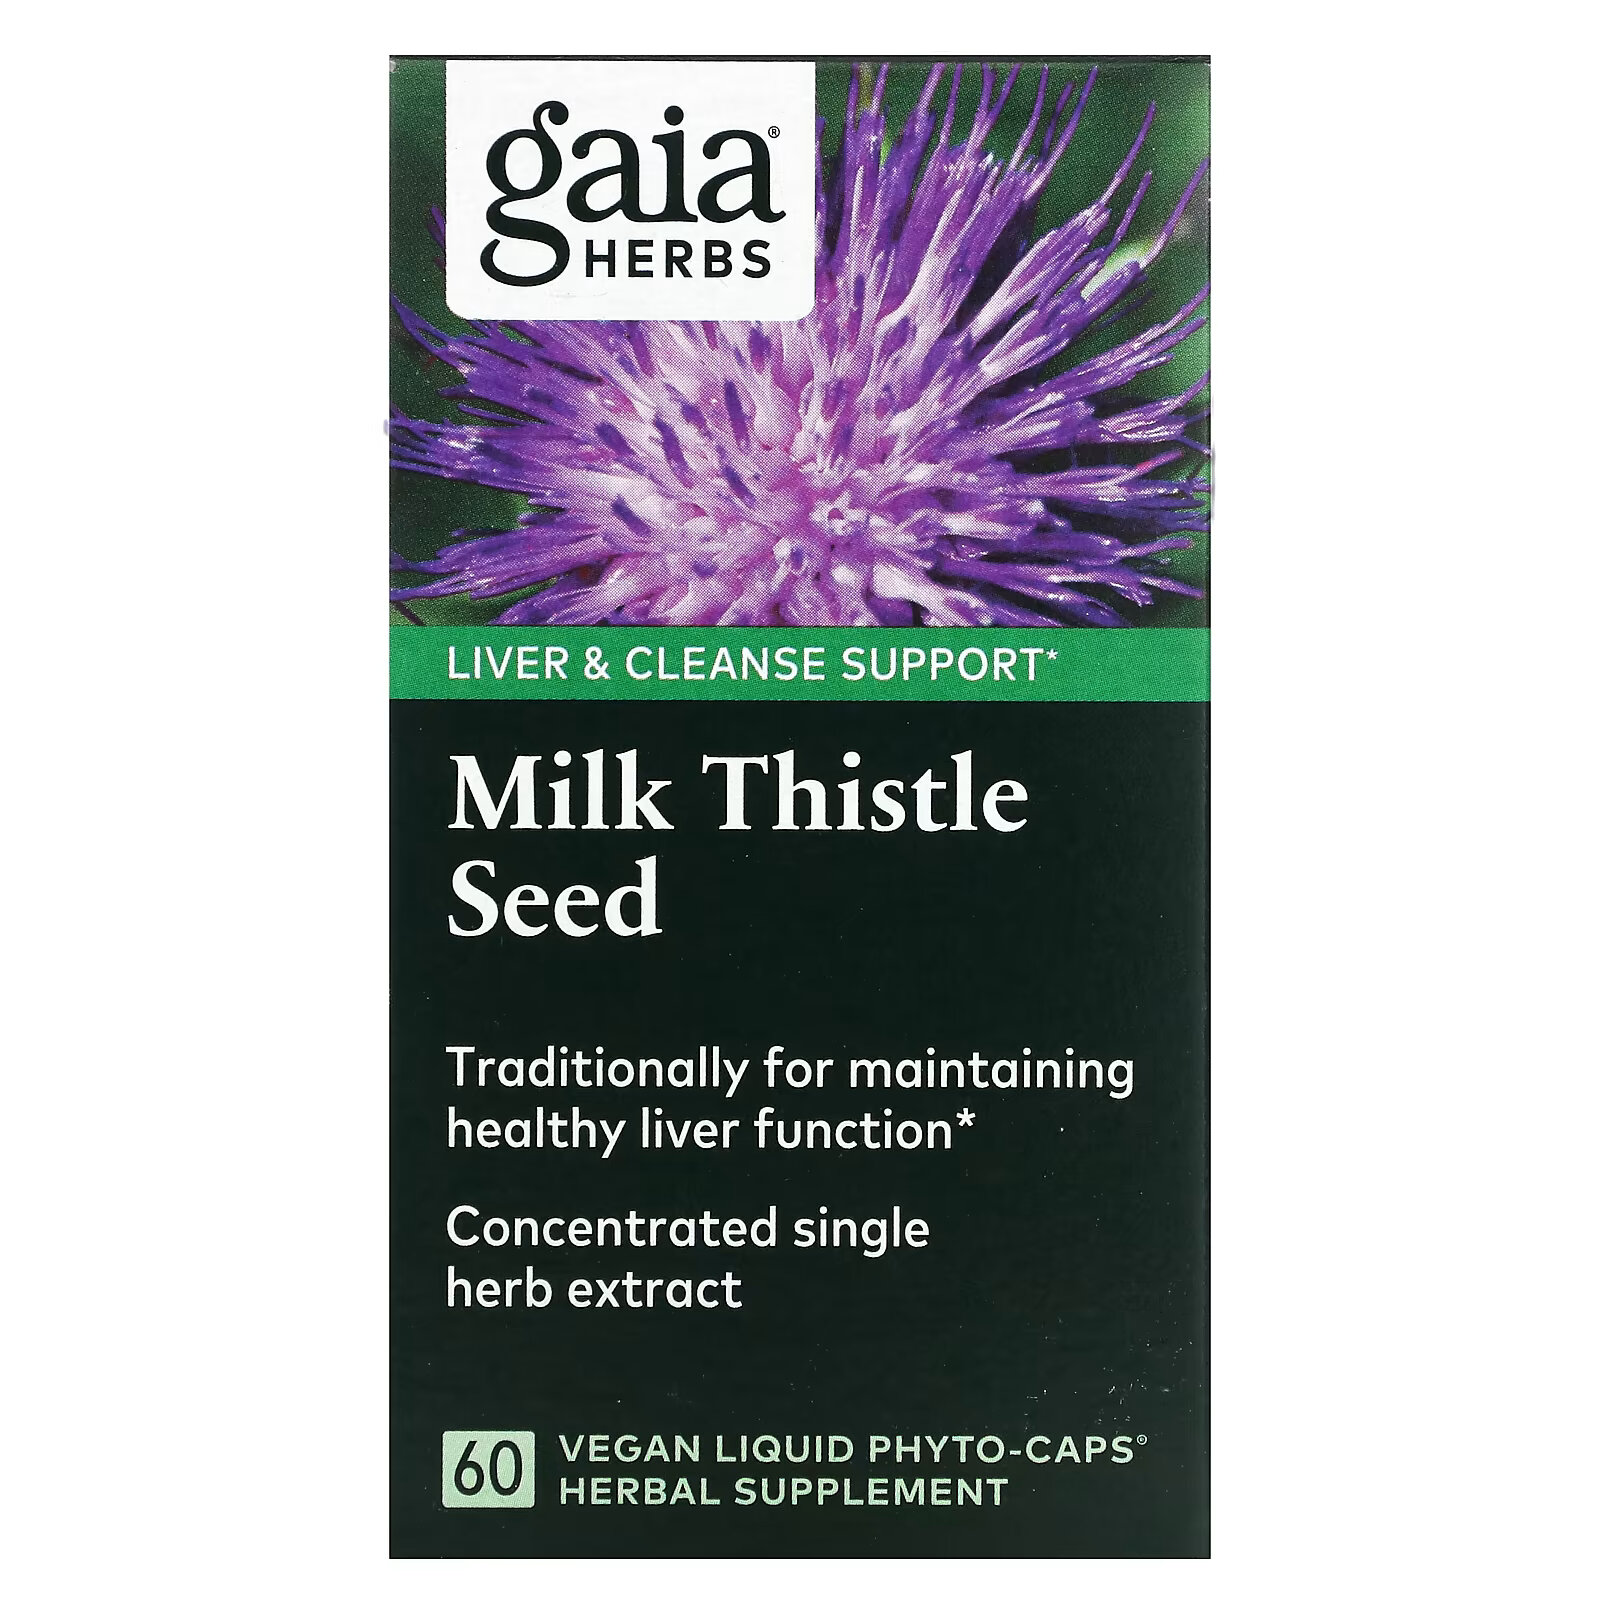 Gaia Herbs, семена расторопши, 60 веганских капсул с жидким содержимым Liquid Phyto-Cap gaia herbs средство для поддержки щитовидной железы 60 веганских капсул phyto cap